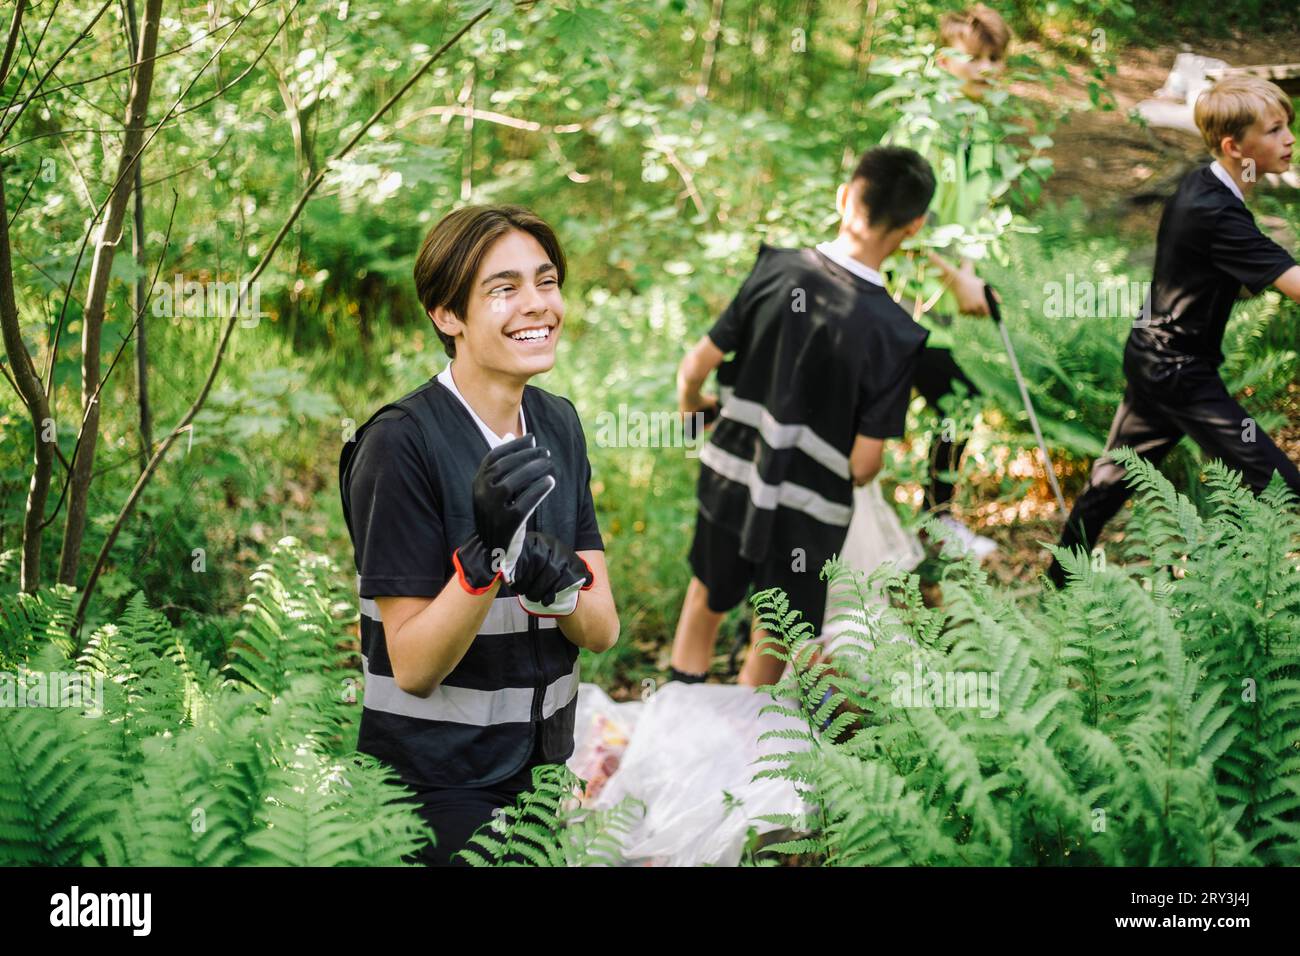 Fröhlicher Teenager mit Handschuhen, der inmitten grüner Pflanzen steht Stockfoto